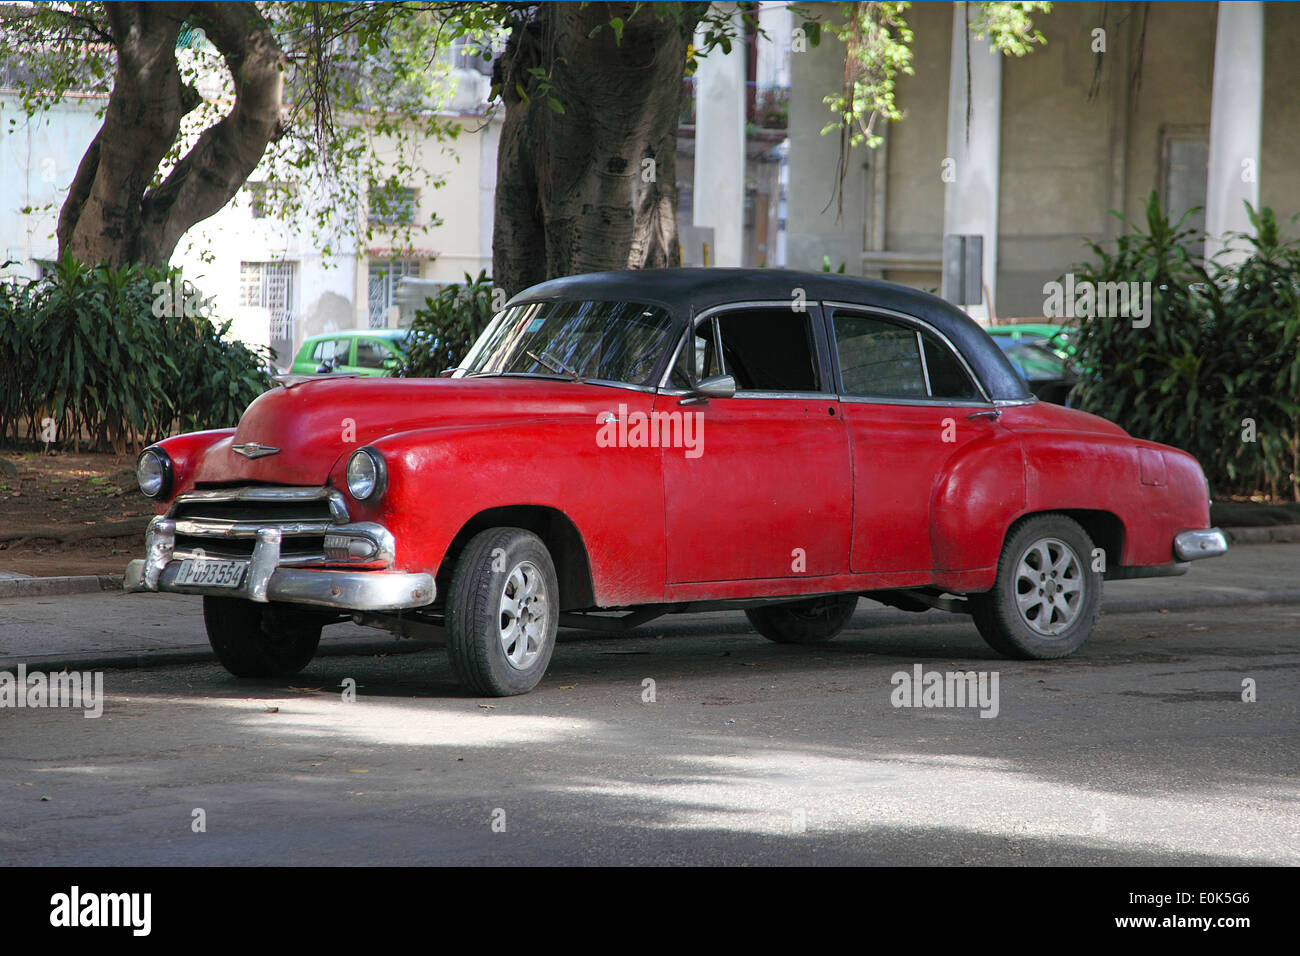 Classic American Cars In Cuba E0K5G6 